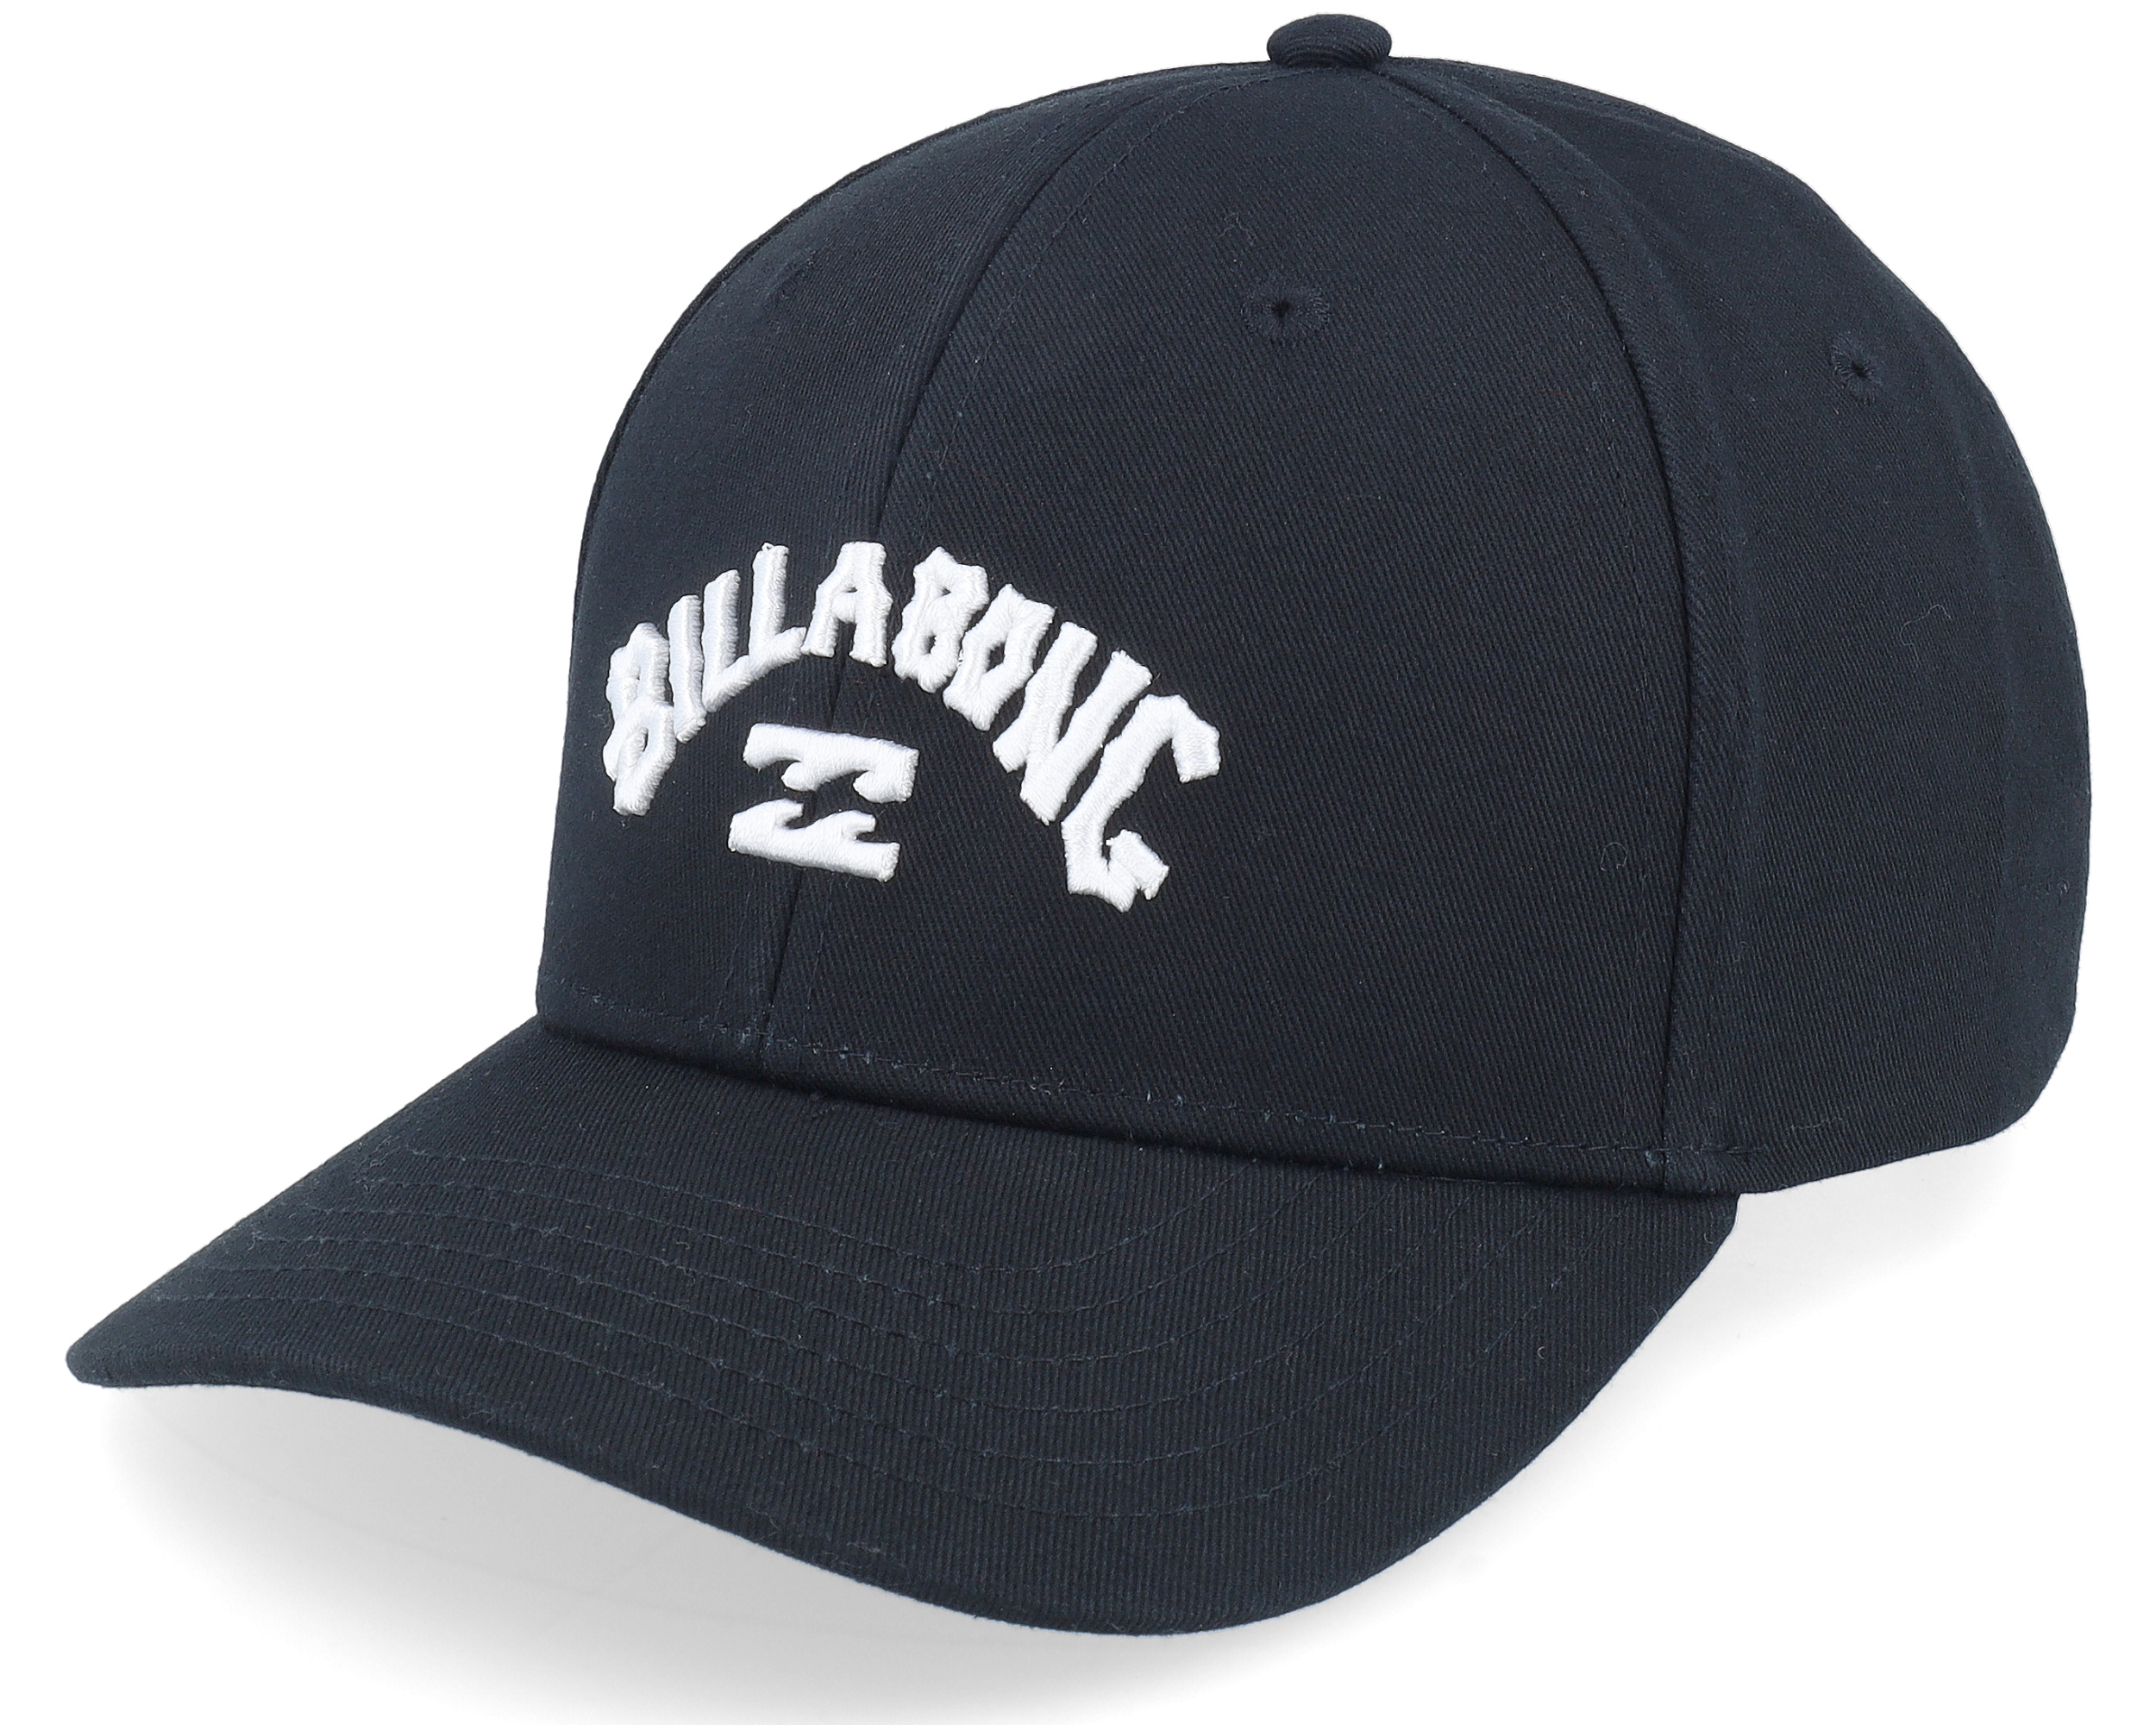 Billabong - Black Arch cap Adjustable